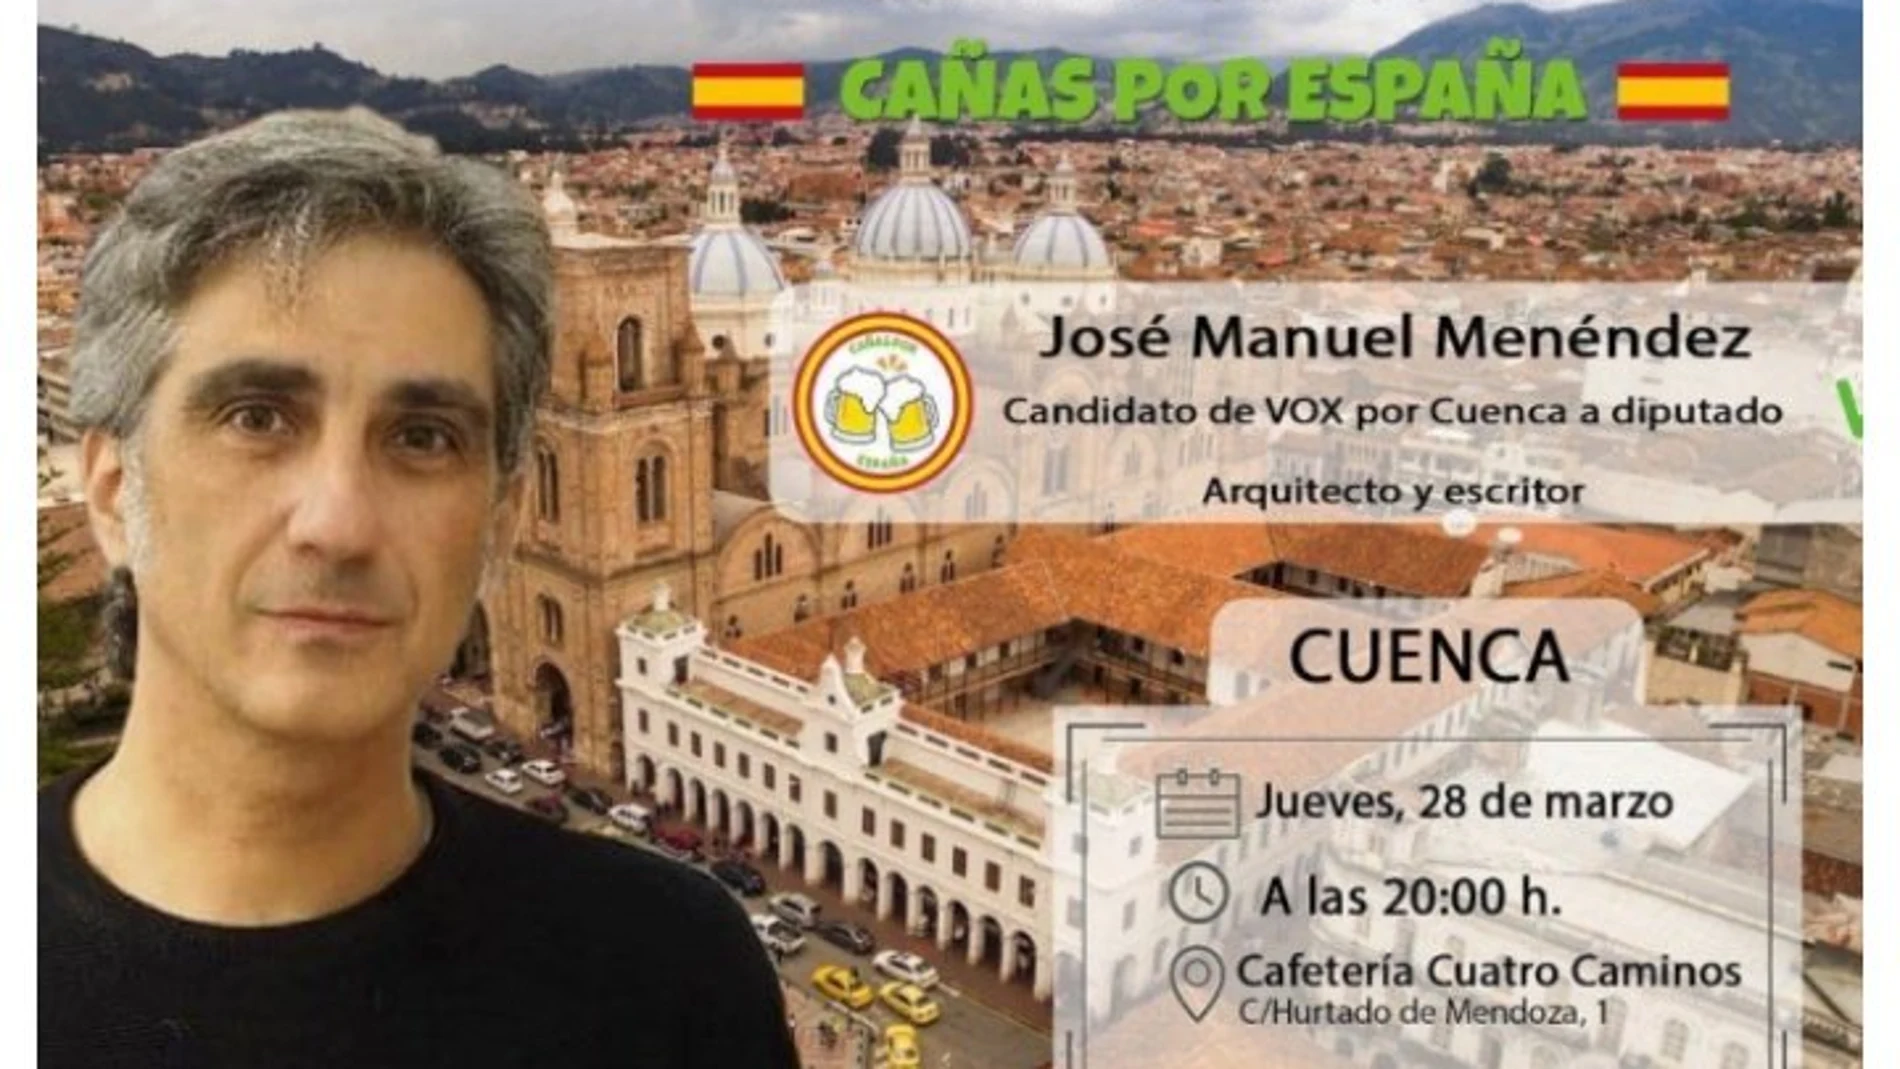 Imagen retirada de la convocatoria de “Cañas por España” en la que Vox confunde a Cuenca de España con Cuenca de Ecuador